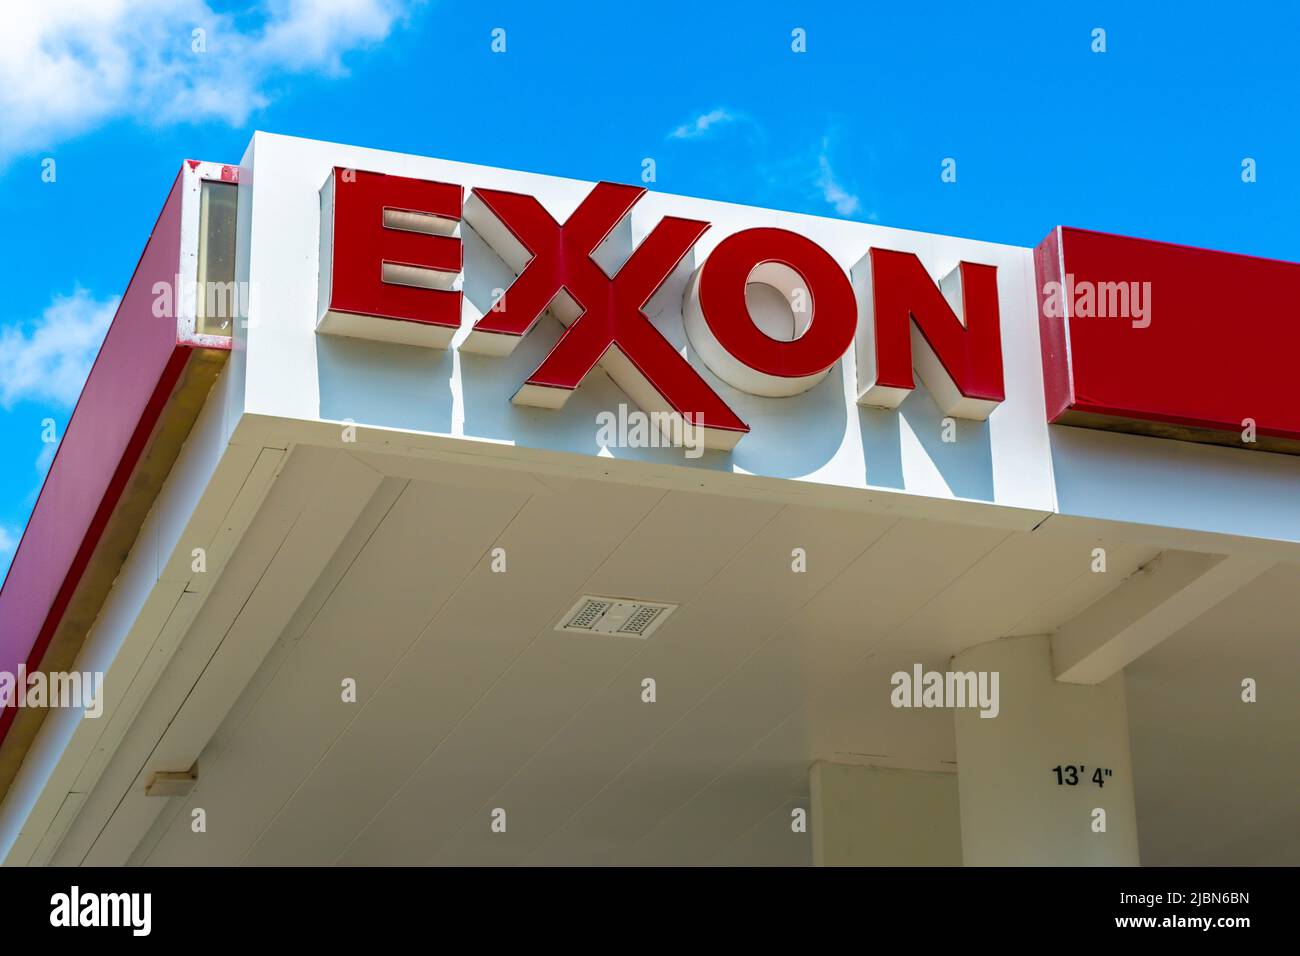 La façade extérieure de la station-service Exxon affiche la marque et le logo en lettres rouges sur un ciel bleu avec des nuages blancs dans le sud-ouest de Charlotte, en Caroline du Nord. Banque D'Images